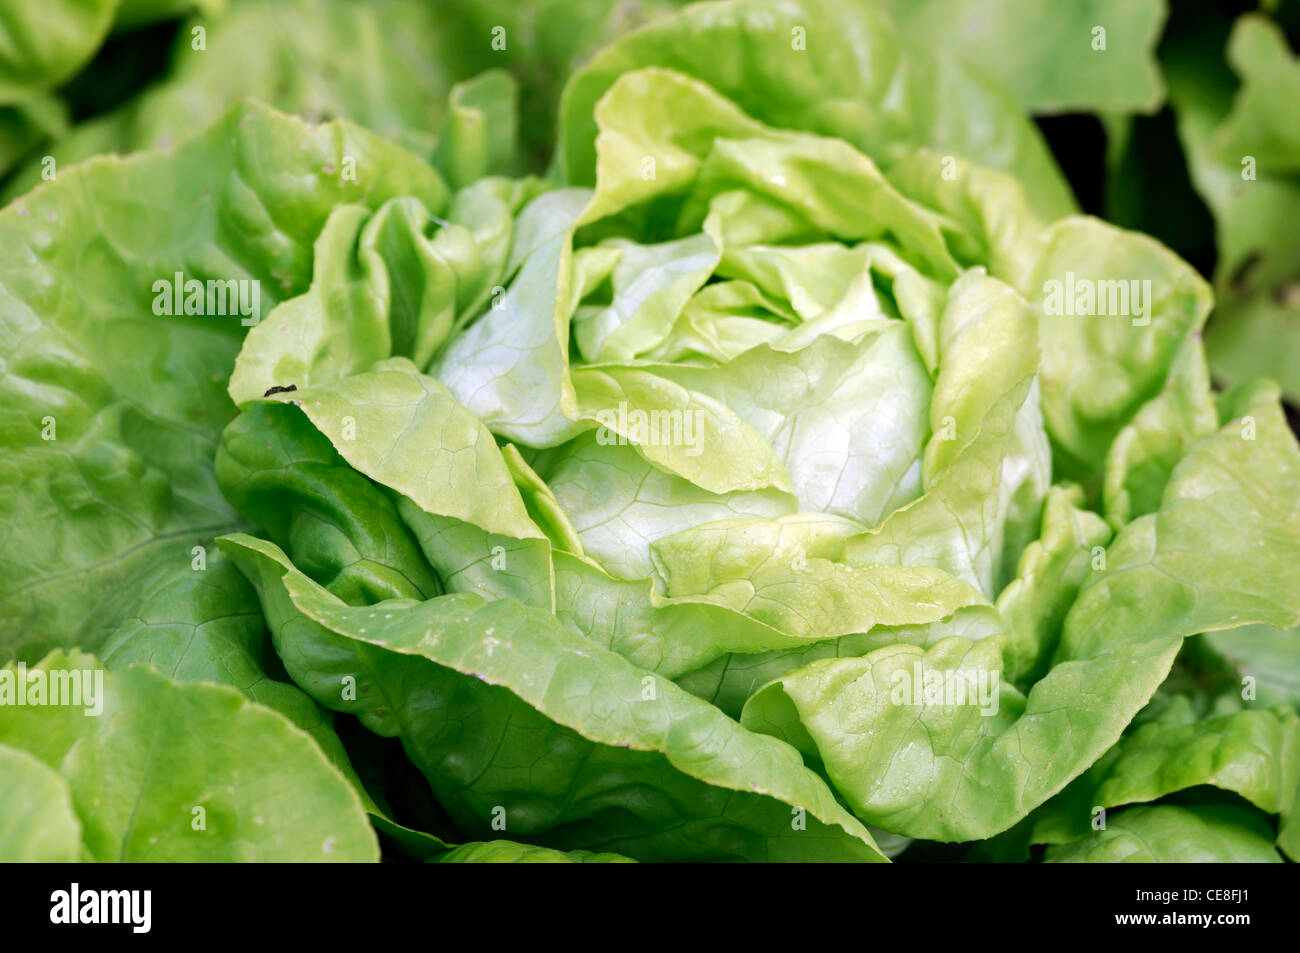 La laitue Sylvesta Lactuca sativa Sylvesta résistance aux maladies des légumes à salade de laitues comestibles feuillage vert croissant des cultures alimentaires Banque D'Images